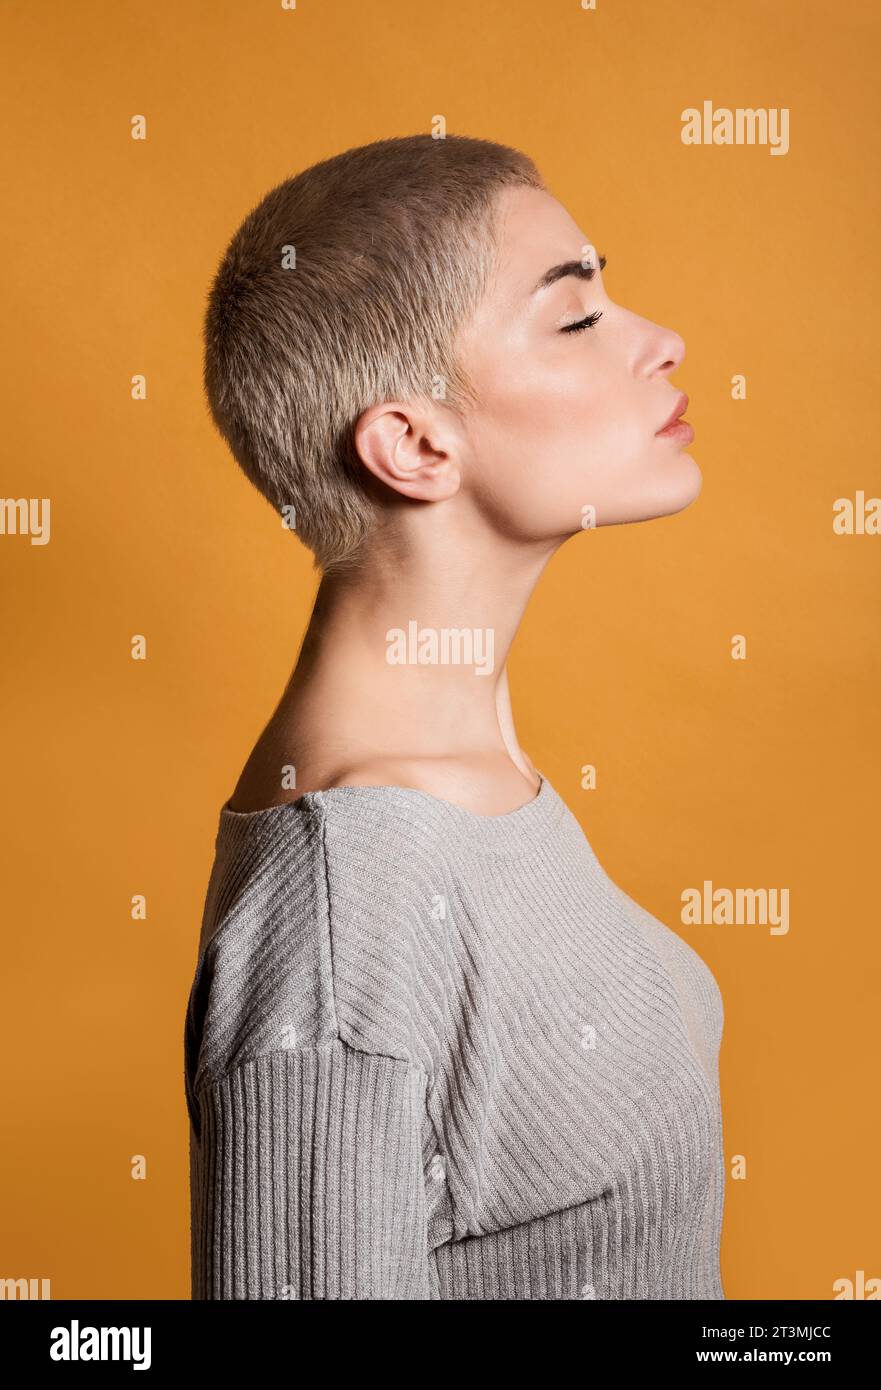 Profilo della vista laterale di una giovane bionda premurosa con capelli corti e occhi chiusi in piedi in camera con il mento contro la parete arancione Foto Stock